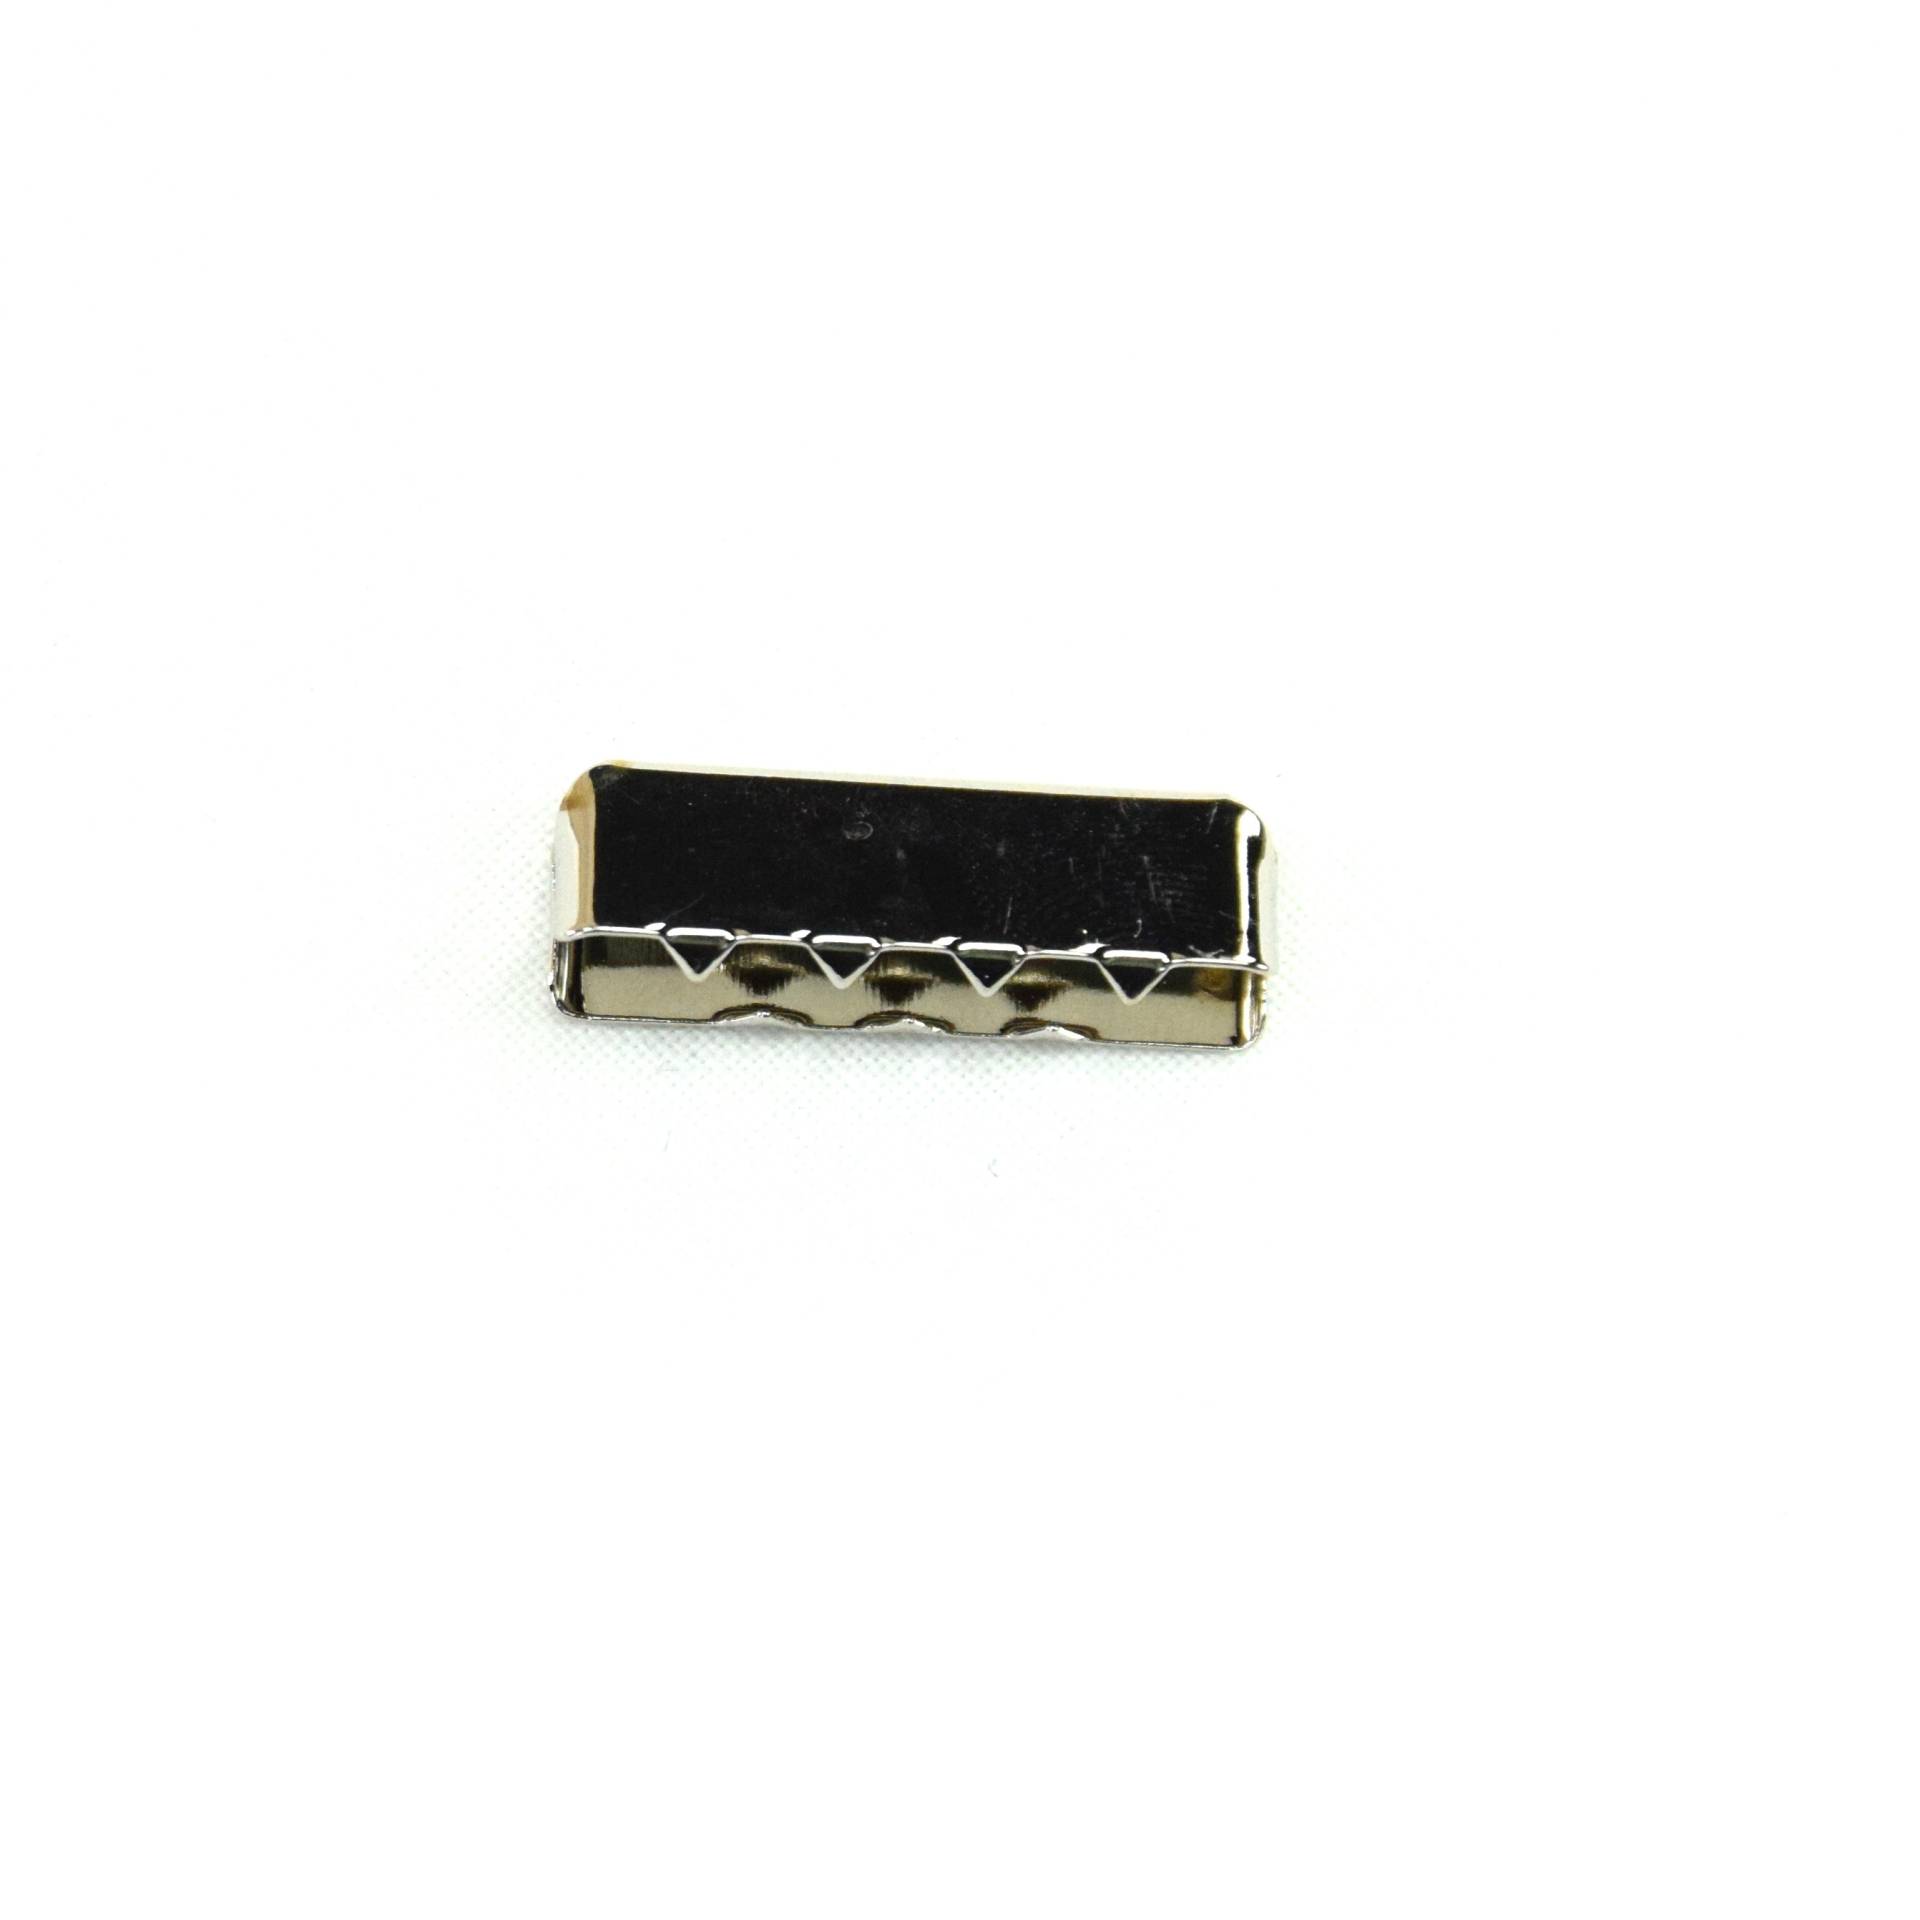 Endstücke für Gurtband 25 mm, silber von Stoffe Hemmers